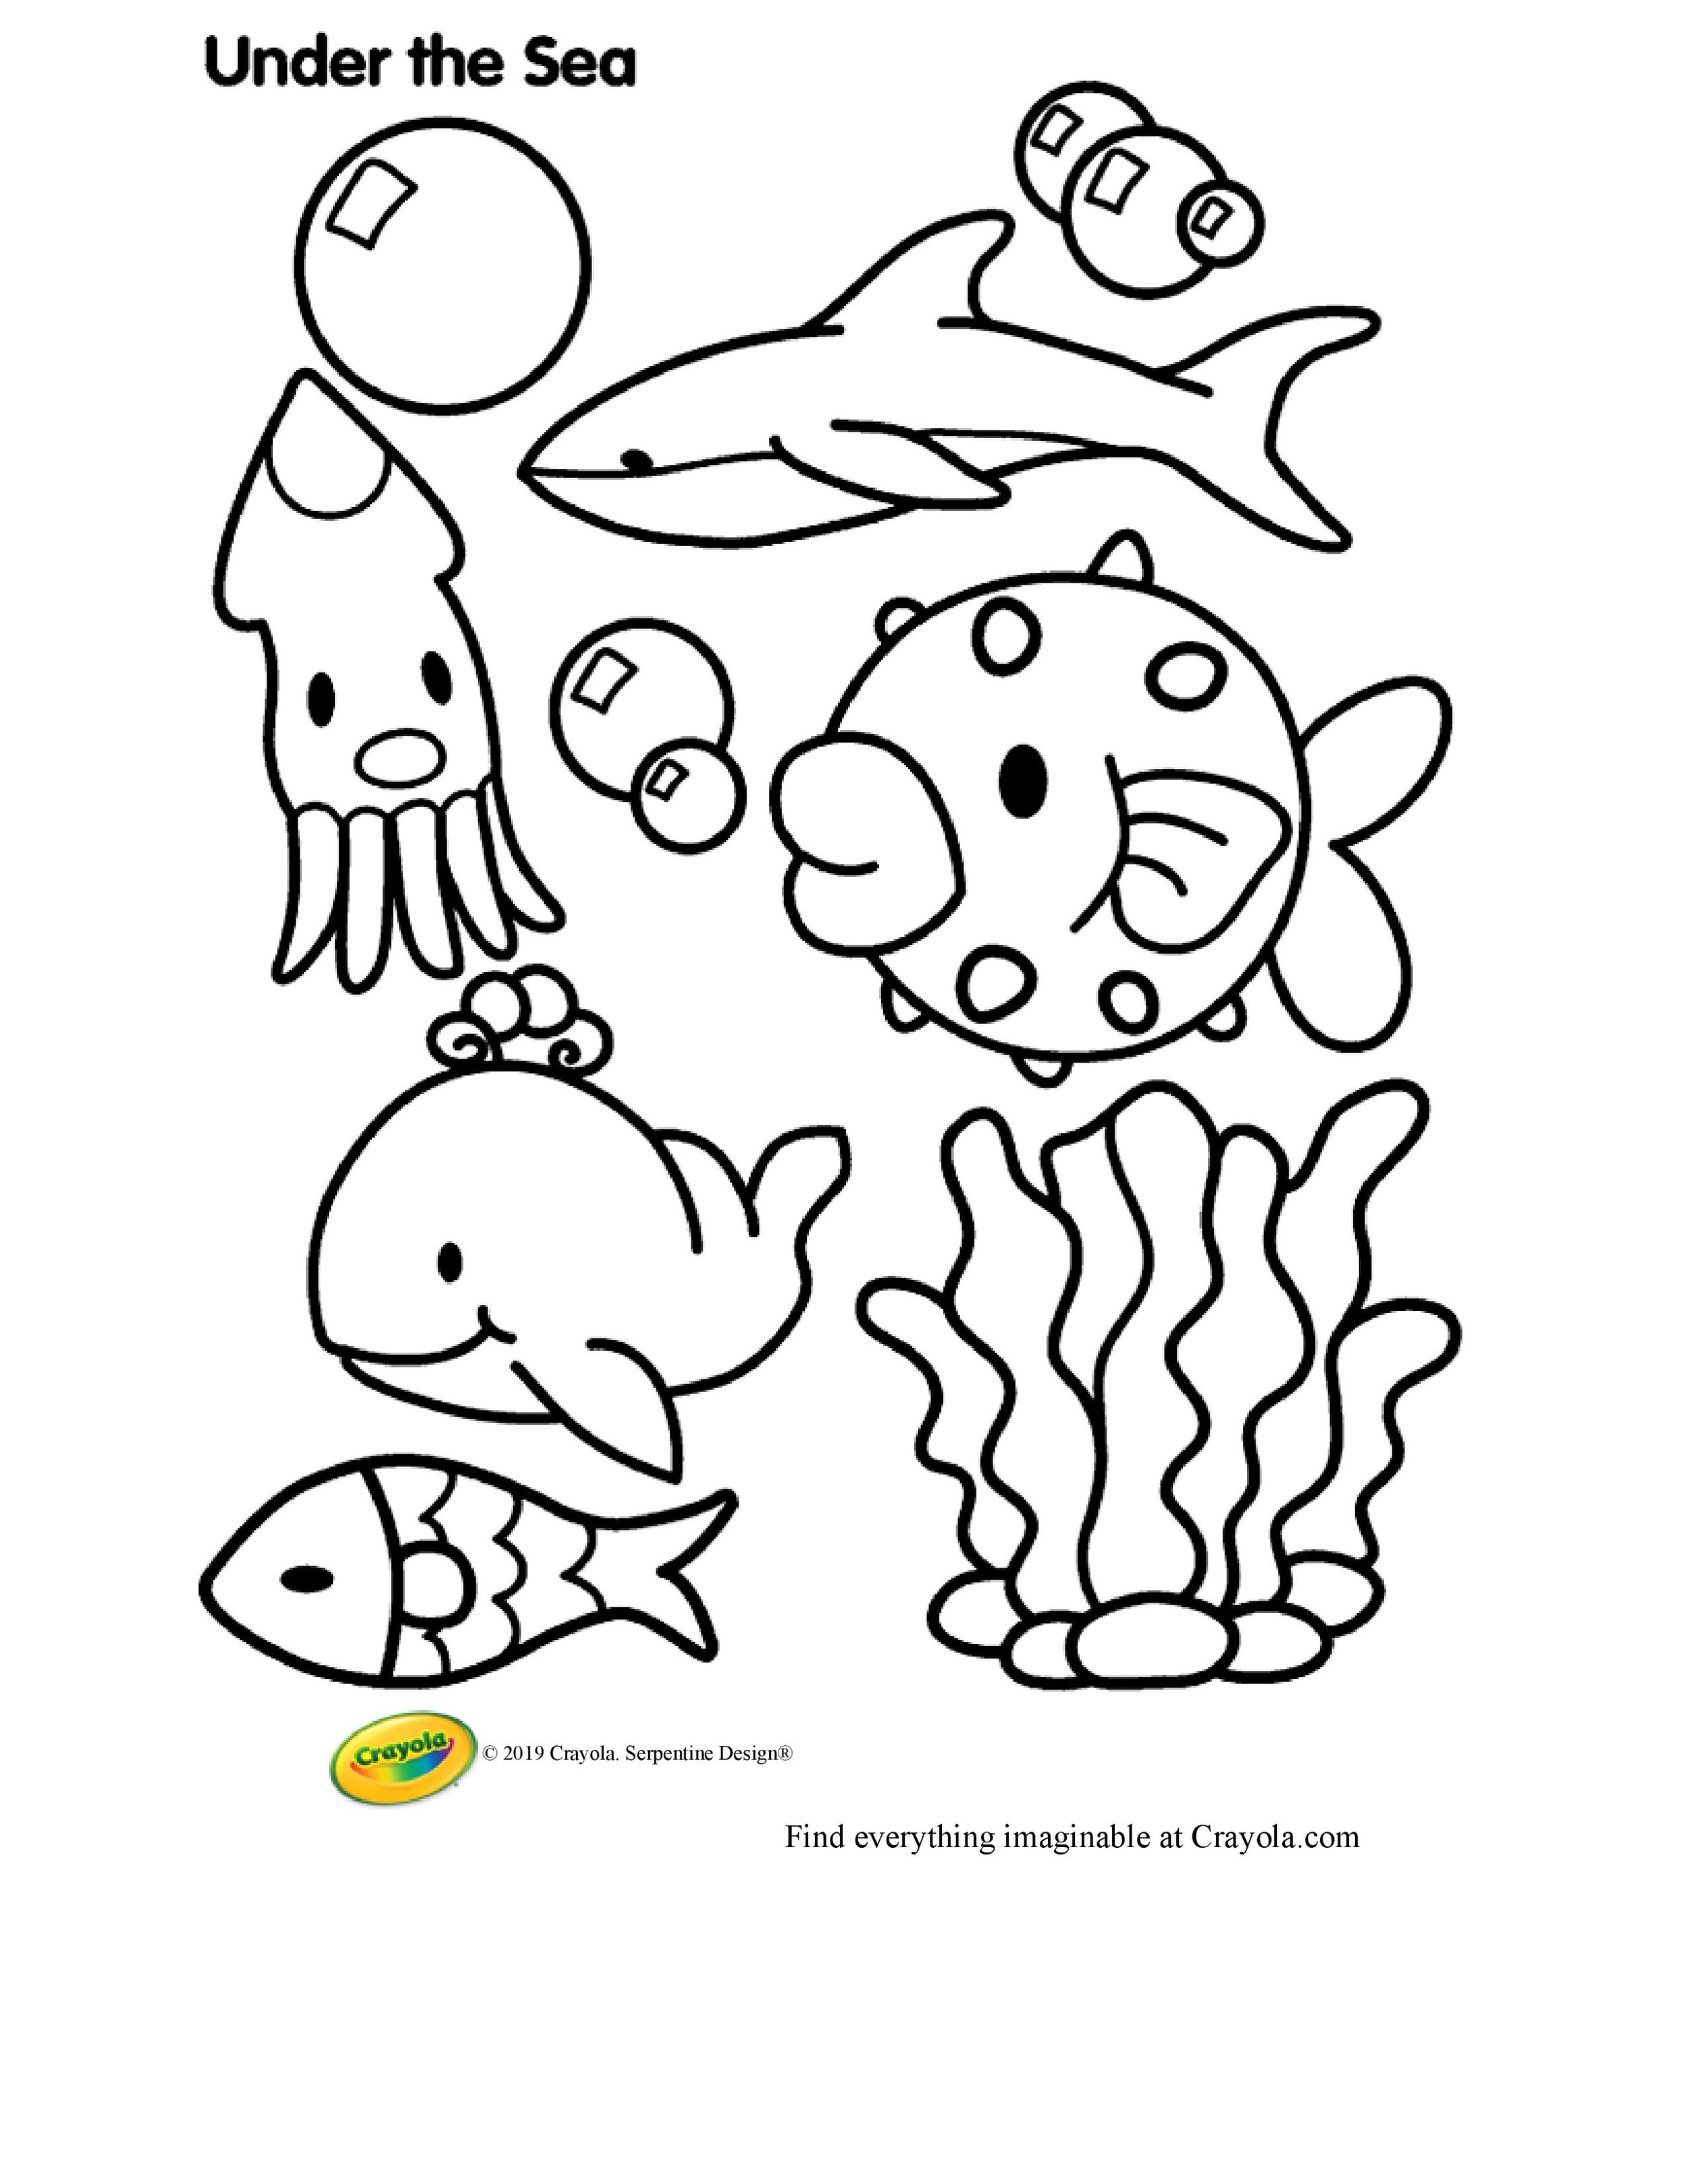 Undersea Creatures Coloring Page.jpg